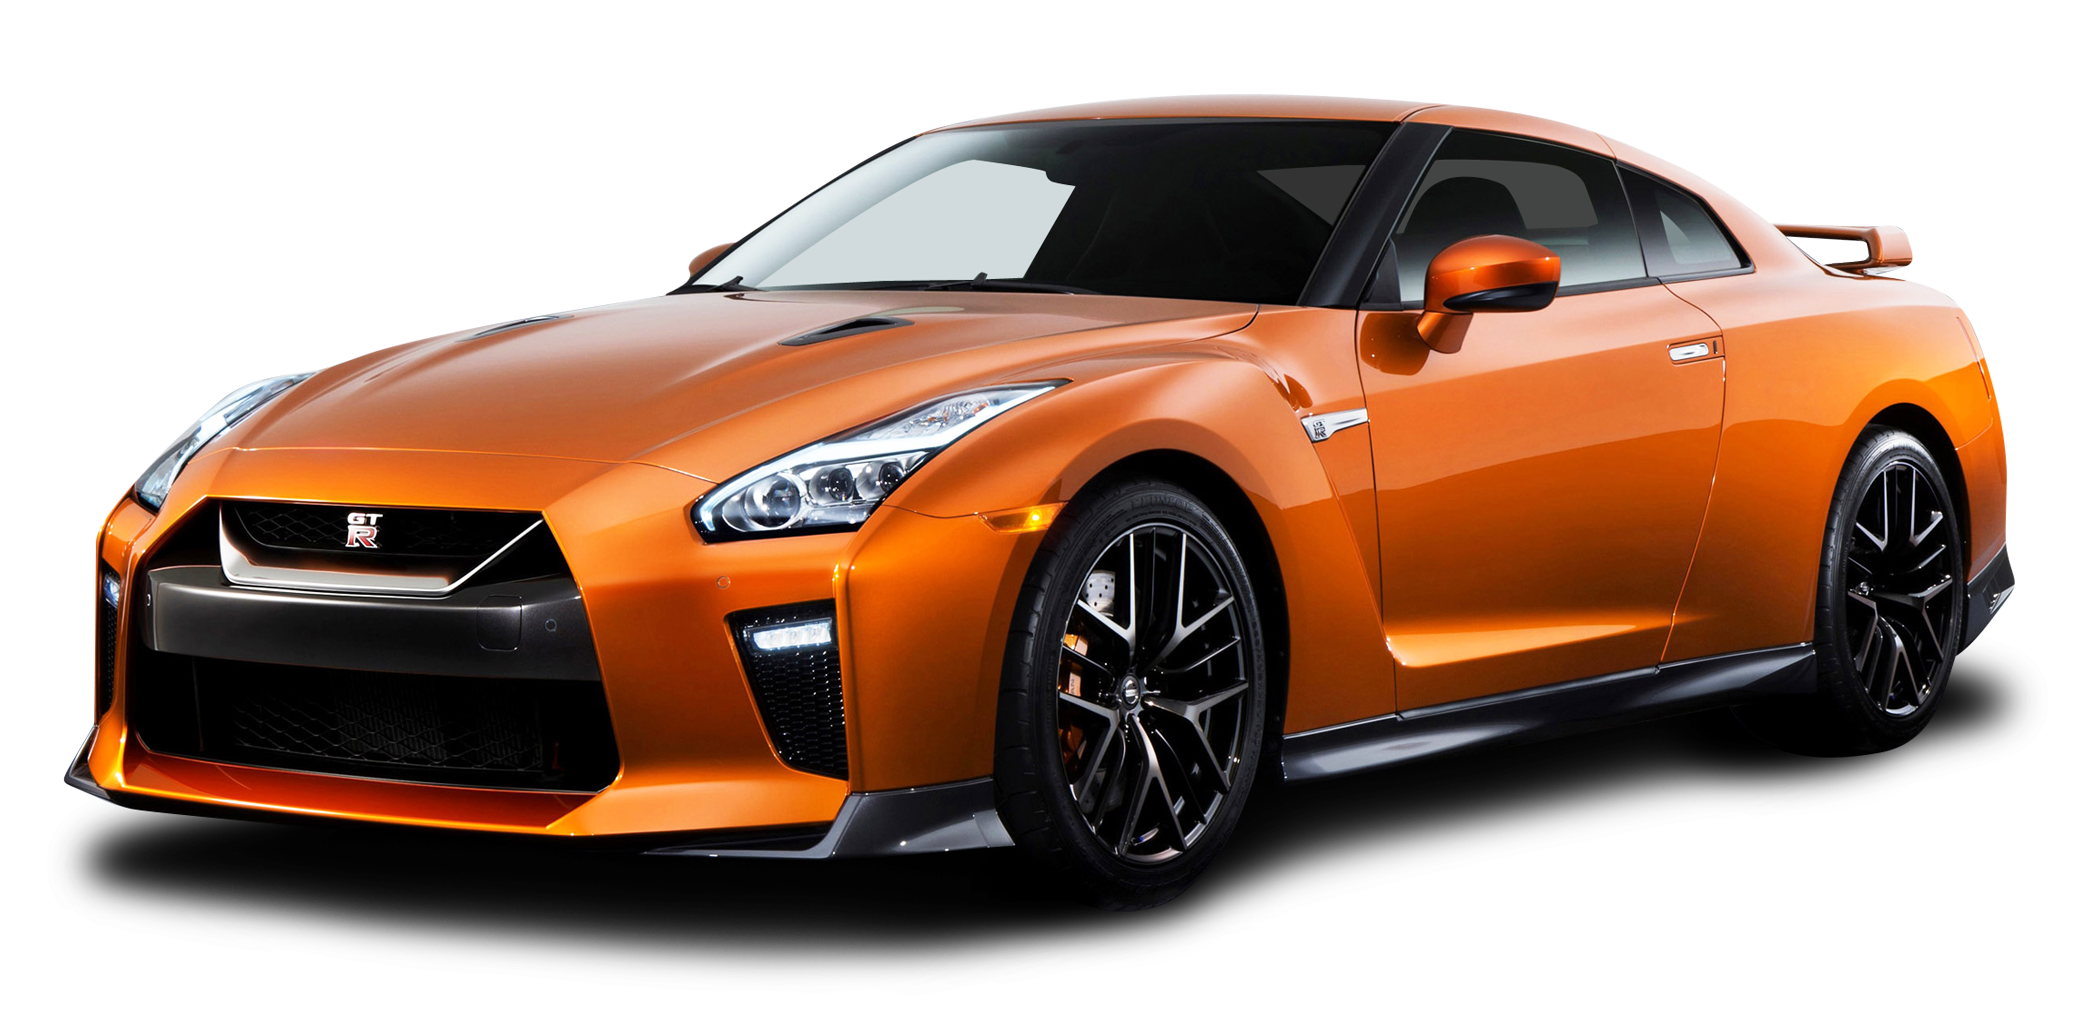 Orange Nissan GTR Car PNG Image for Free Download